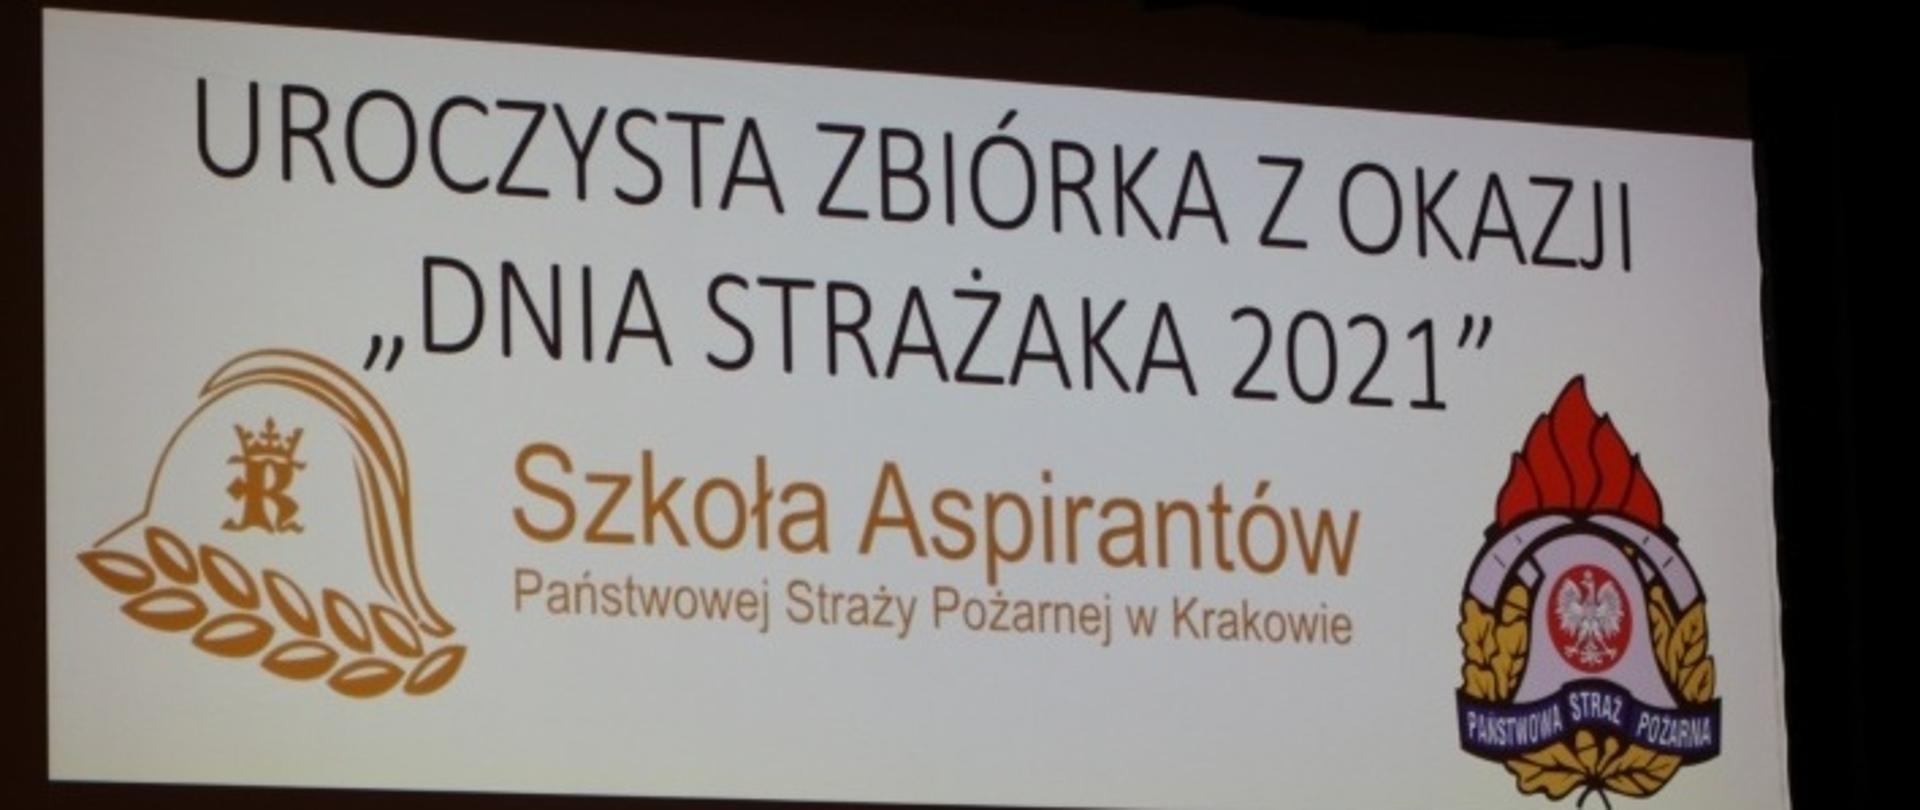 Baner z napisem UROCZYSTA ZBIÓRKA Z OKAZJI Dnia Strażaka 2021 r. Szkoła Aspirantów PSP w Krakowie